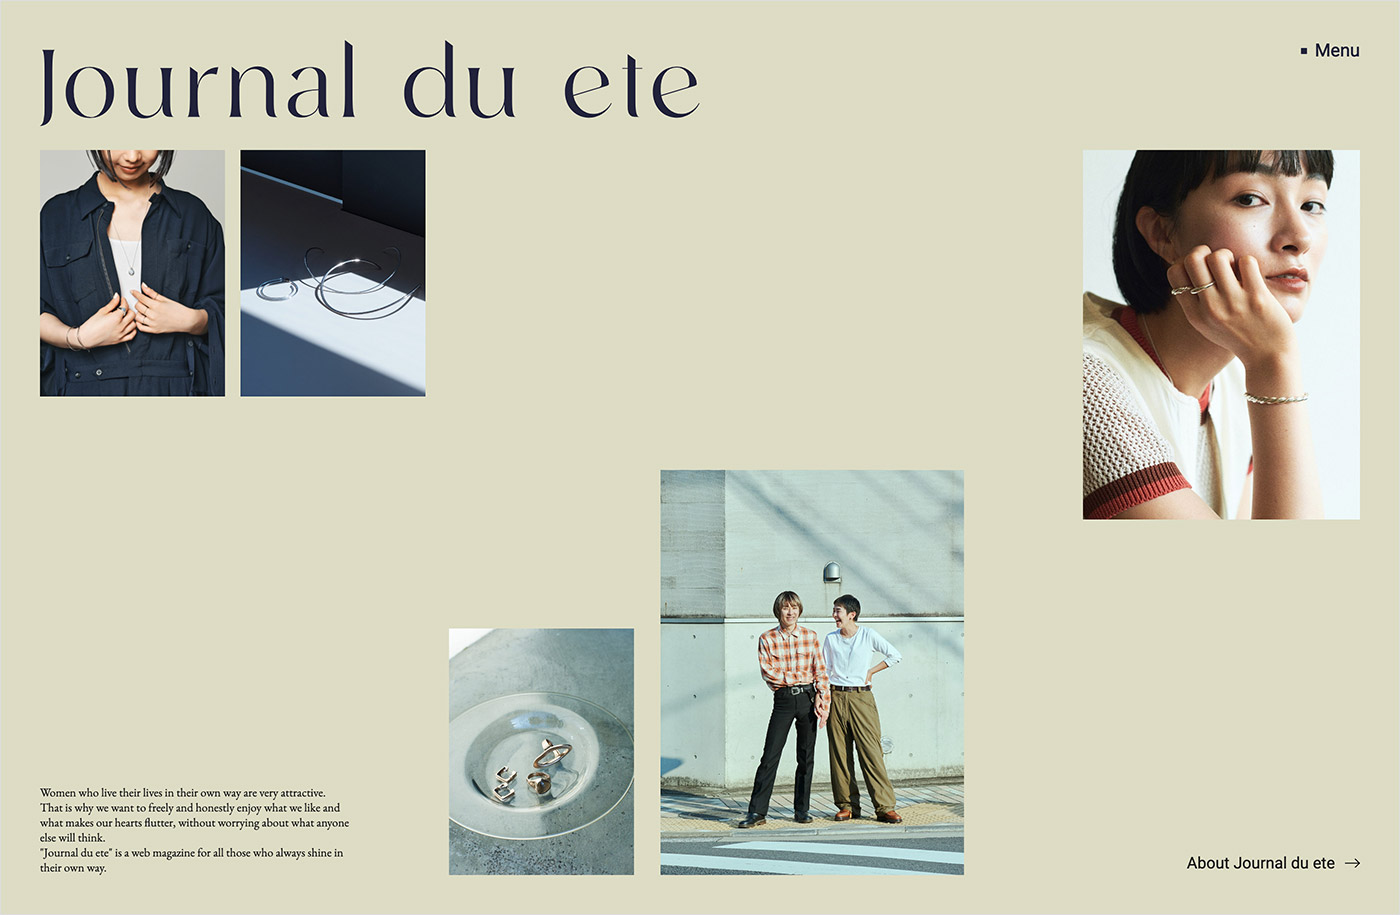 Journal du eteウェブサイトの画面キャプチャ画像